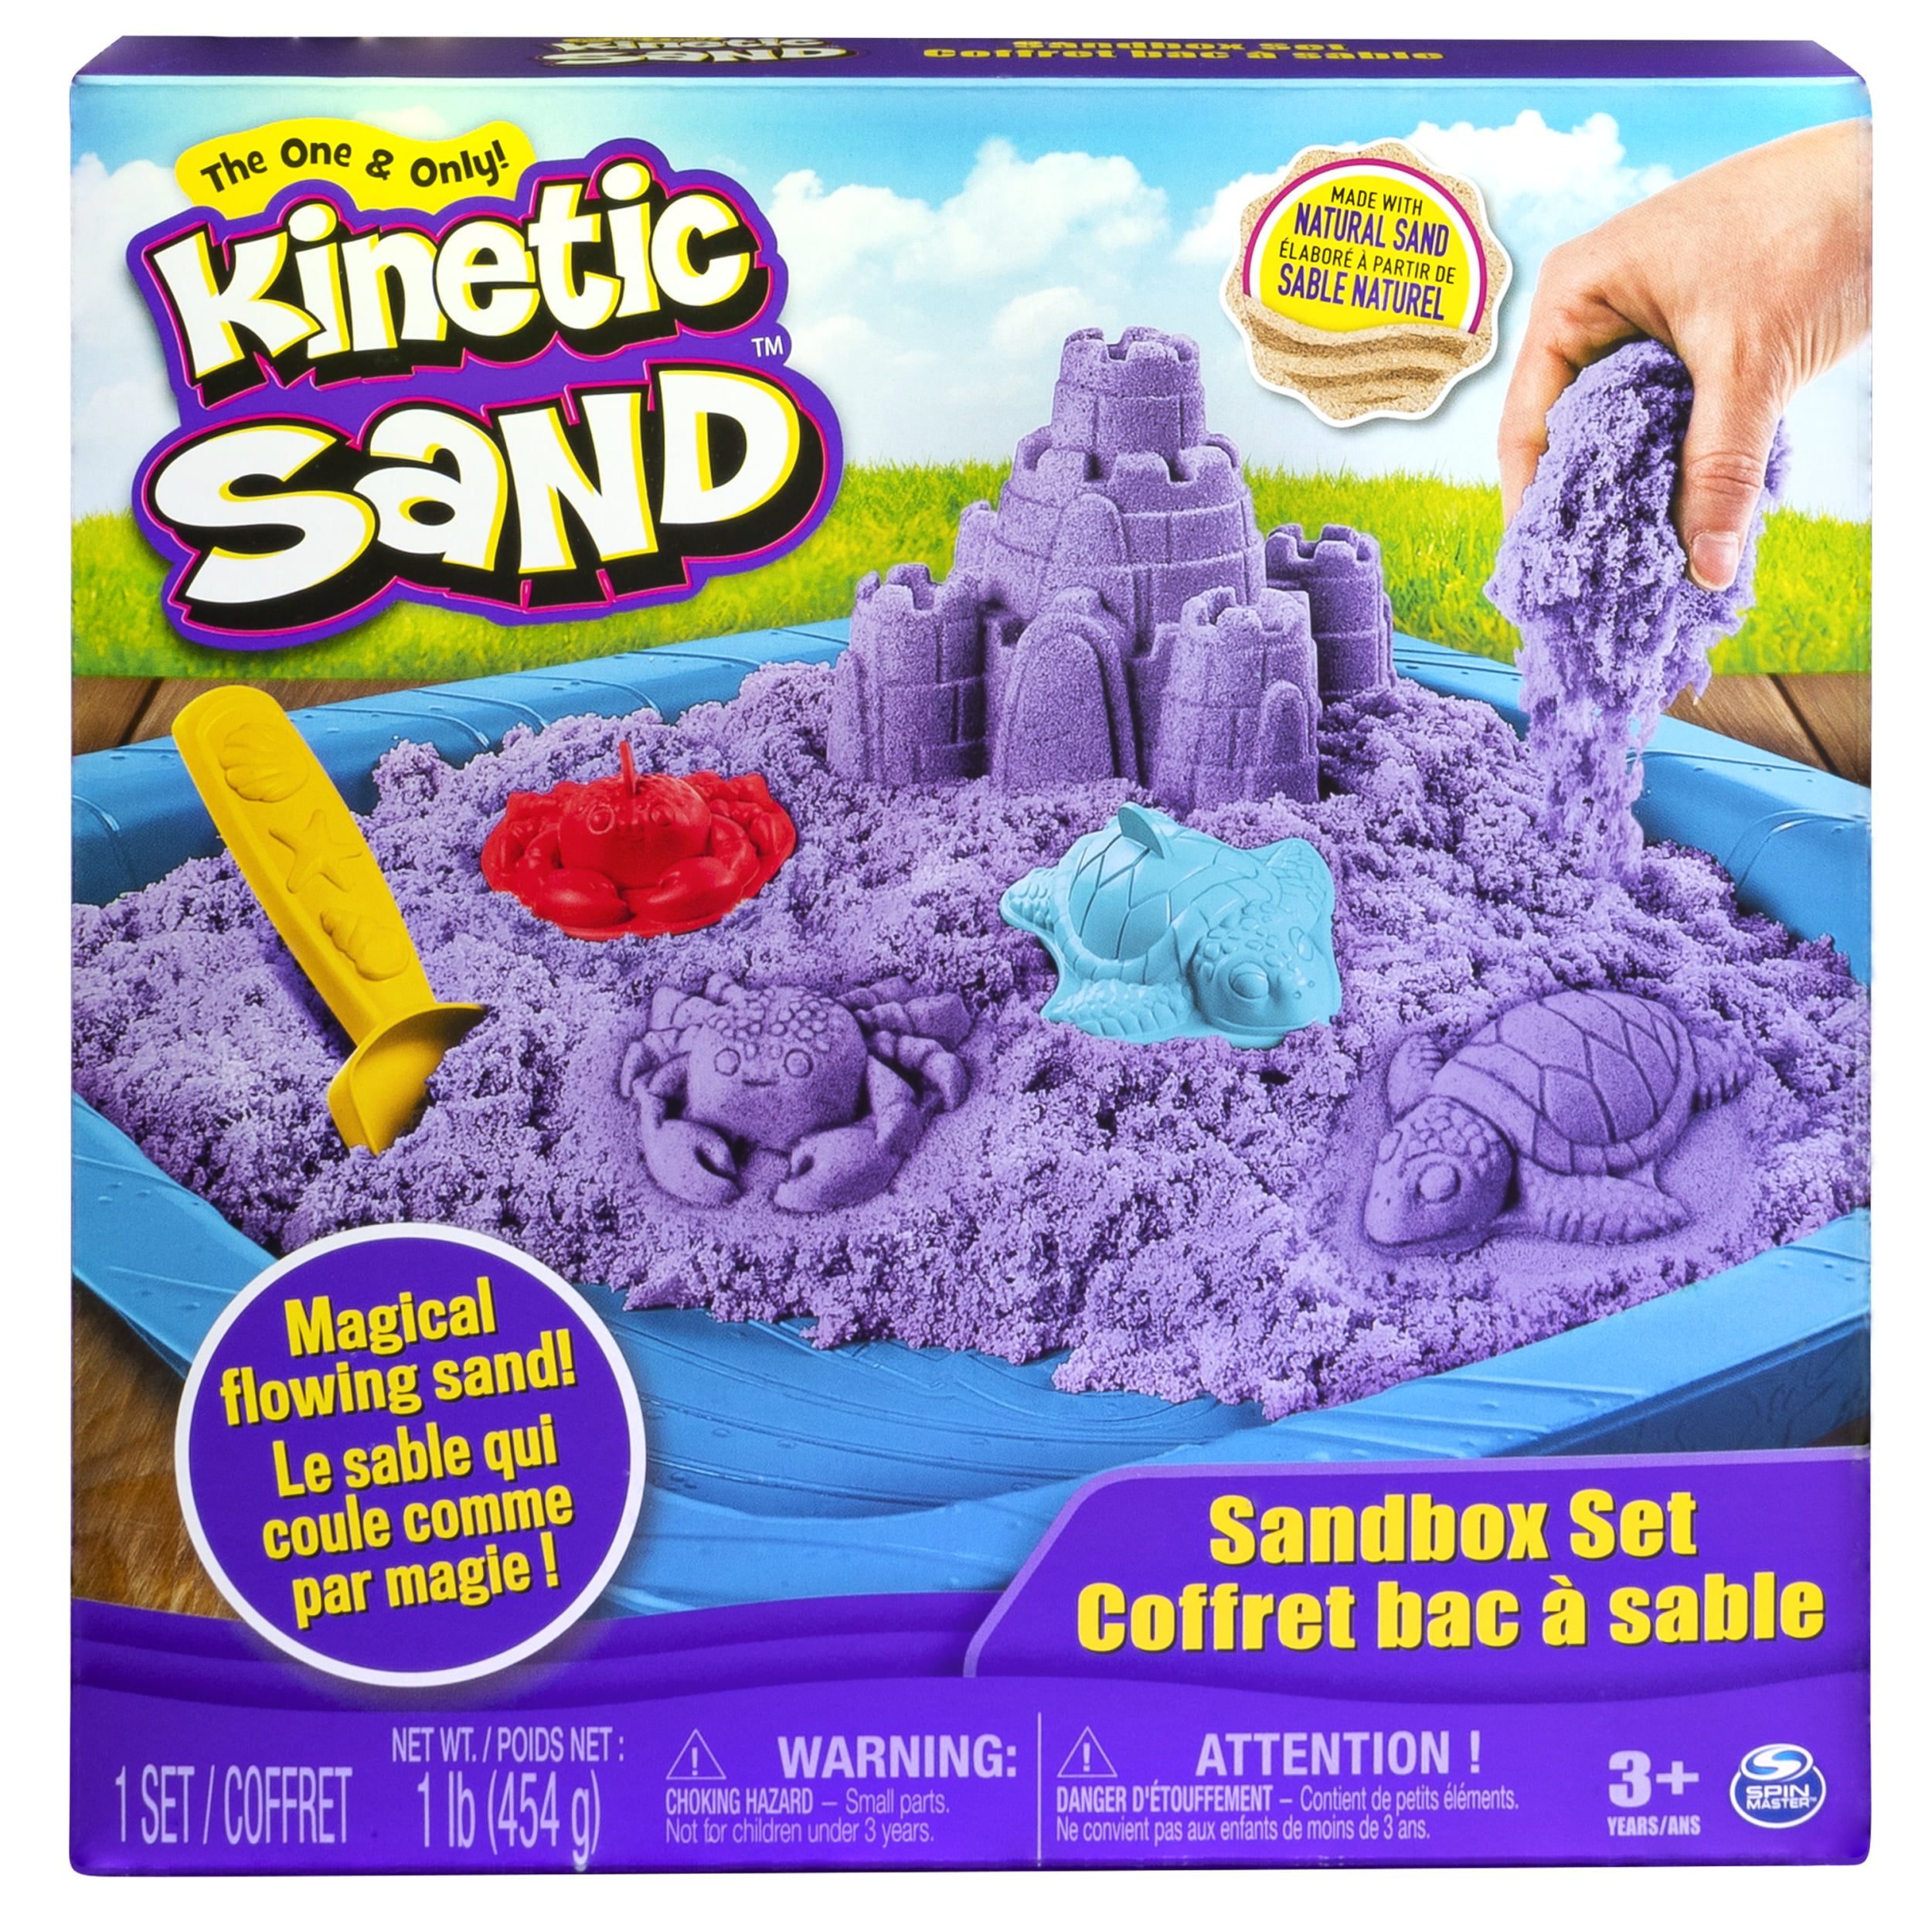 kinetic sand digger set